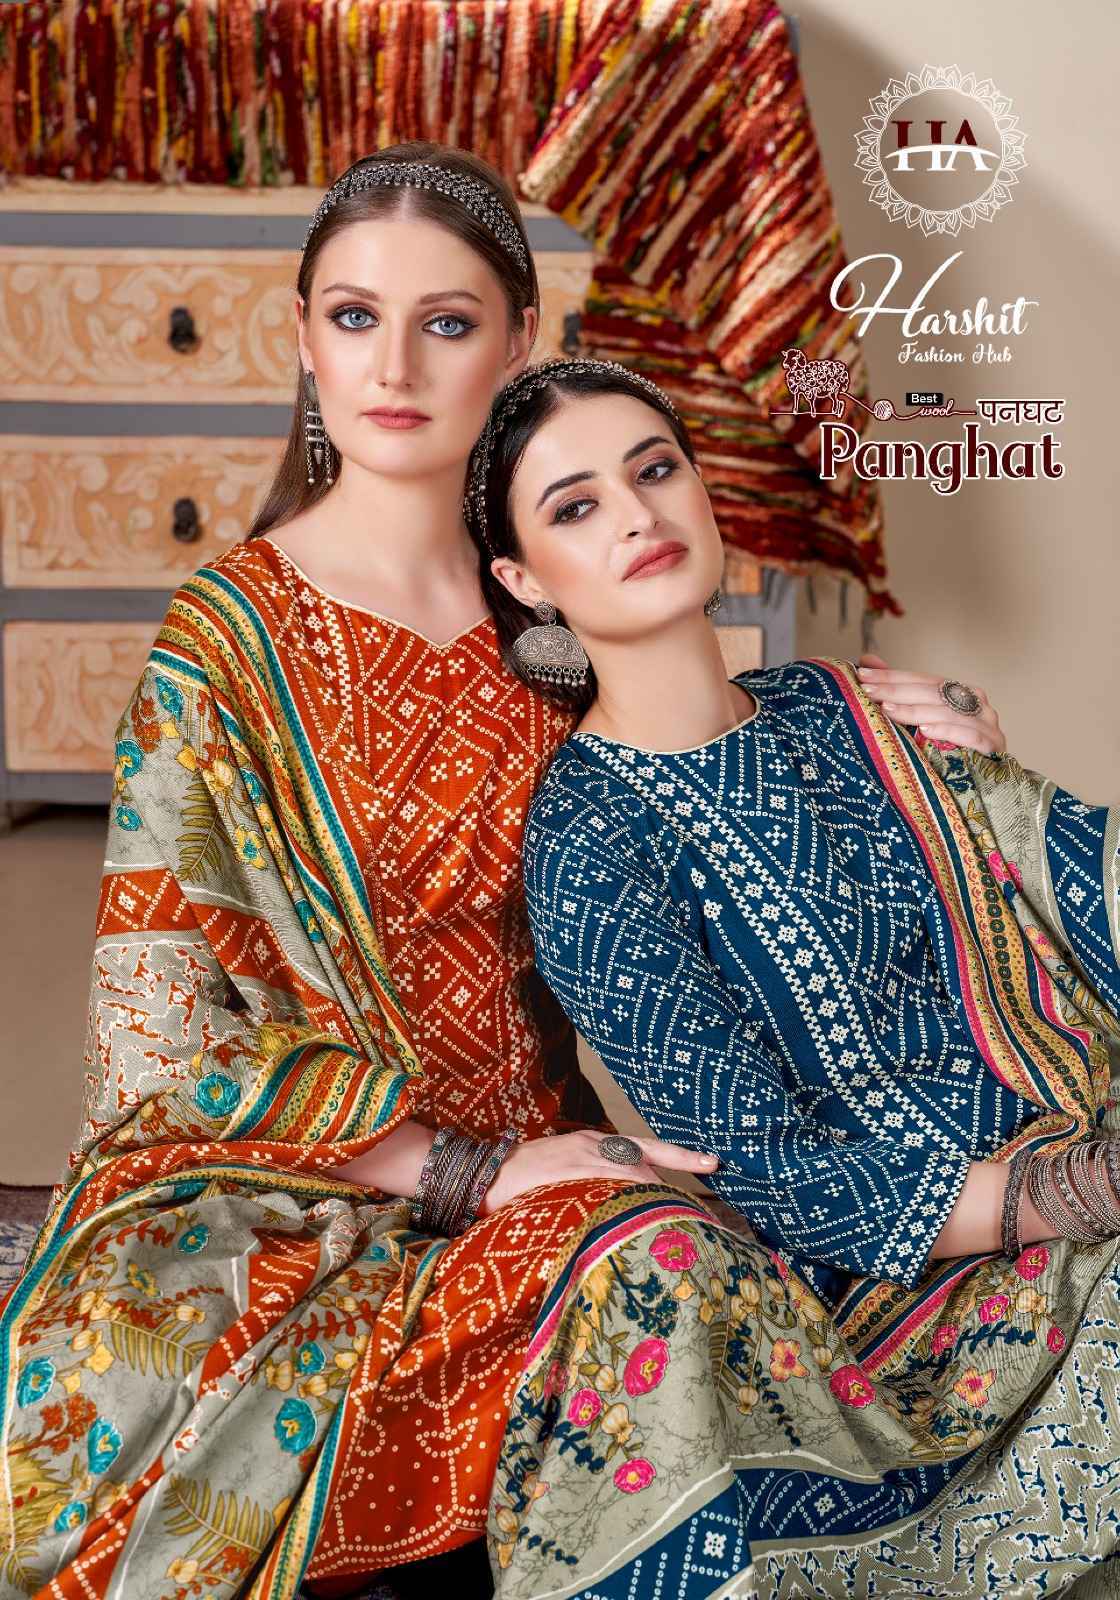 Harshit Fashion Hub Panghat Pashmina Dress Material 8 pcs Catalogue - Surat Wholesale Market